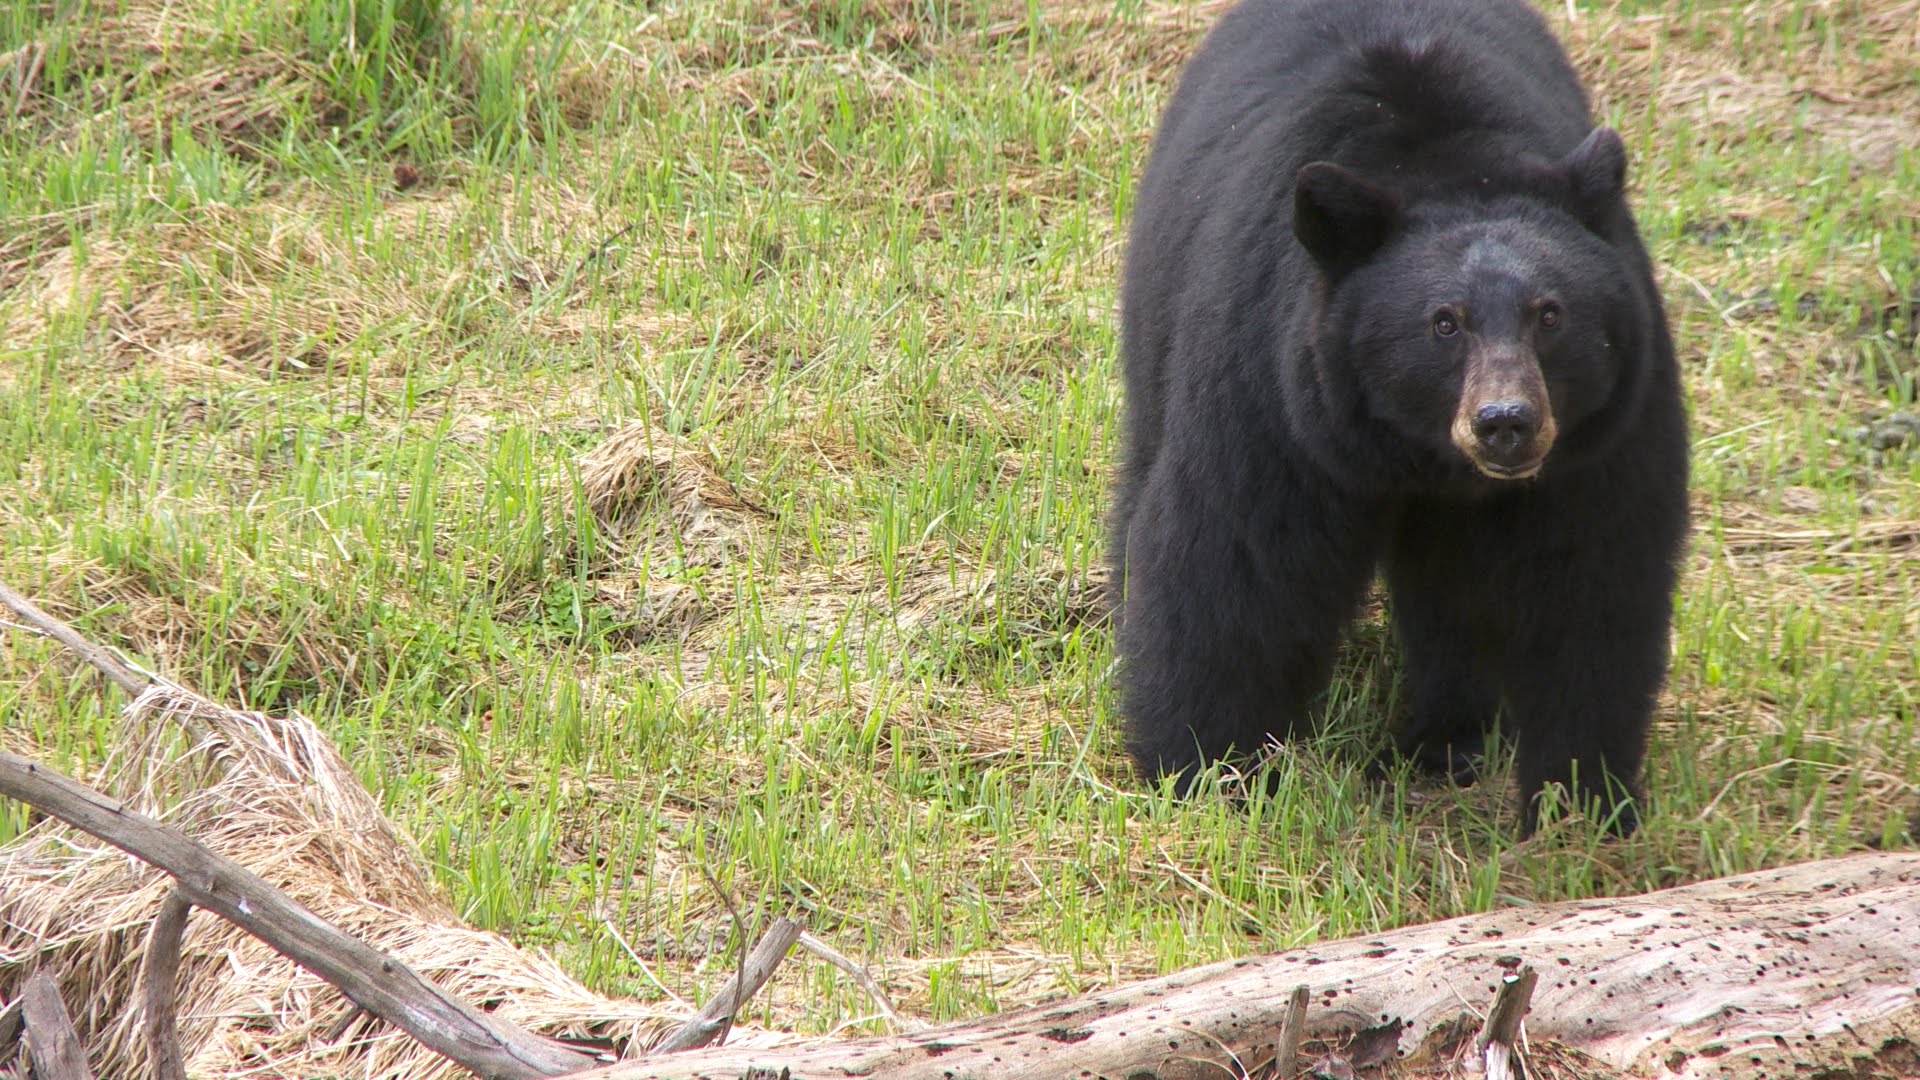 Black Bears - Yosemite Nature Notes - Episode 26 - YouTube